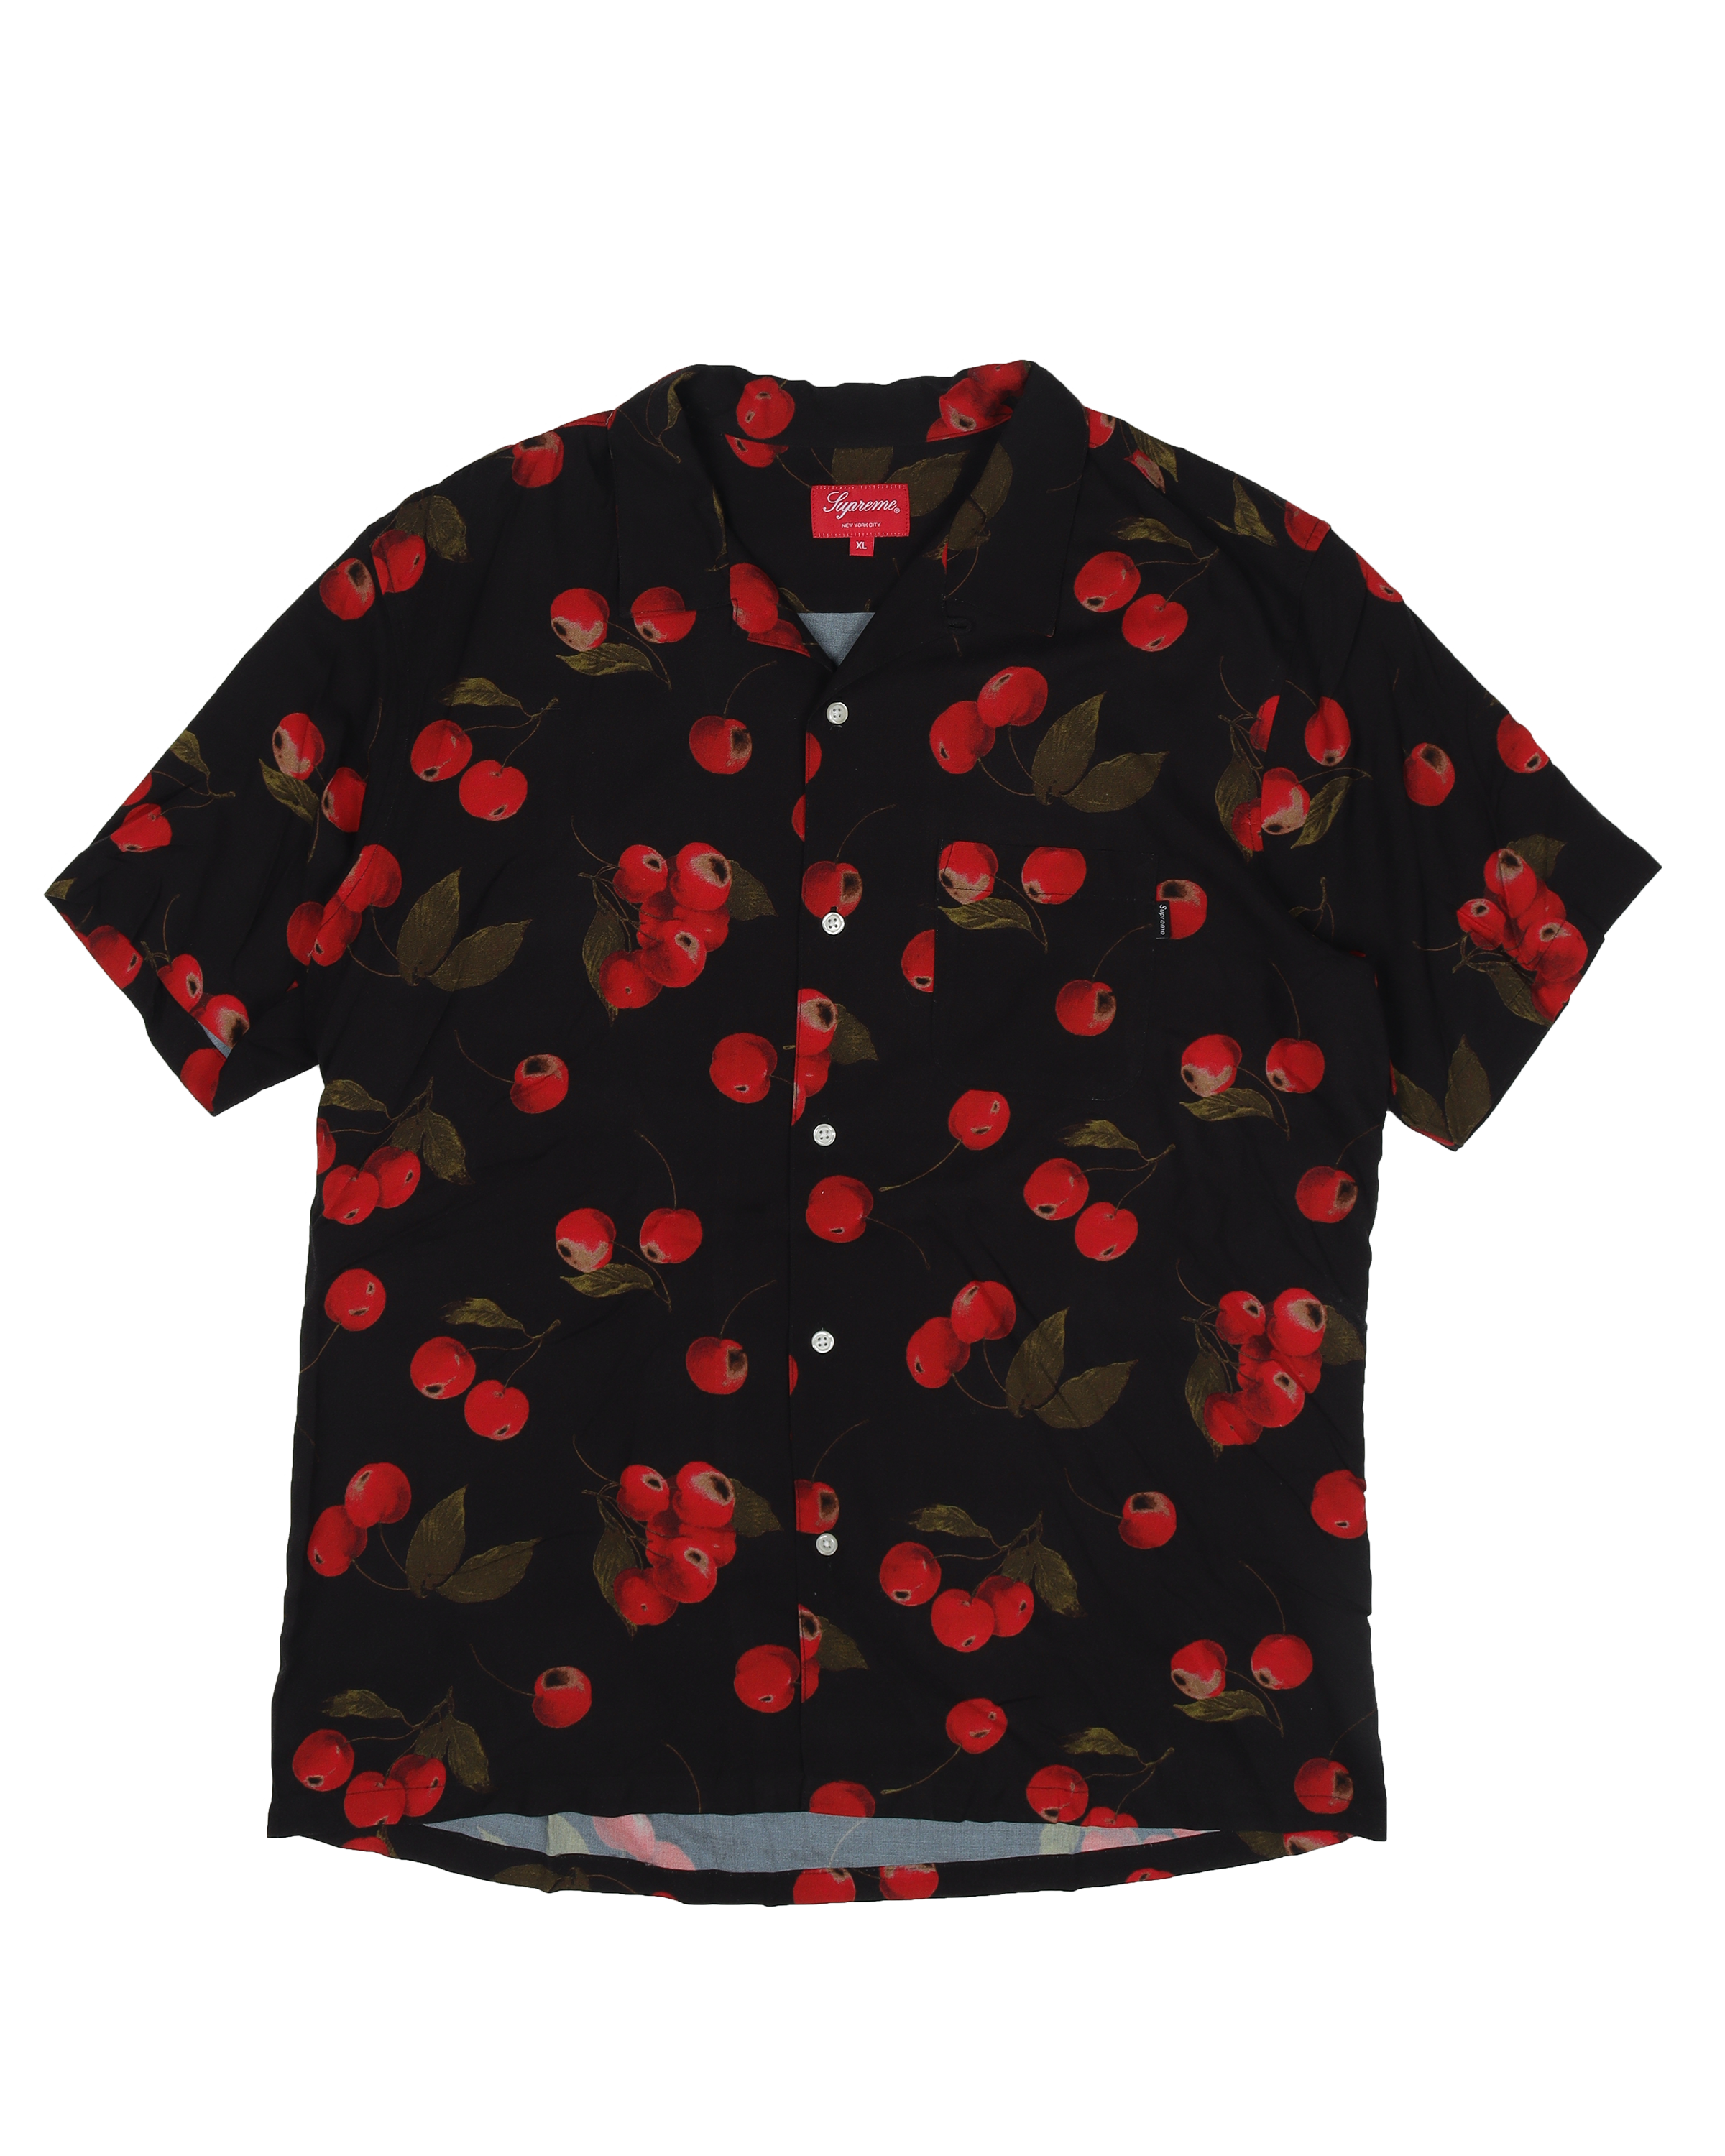 SS19 Rayon Cherry Shirt